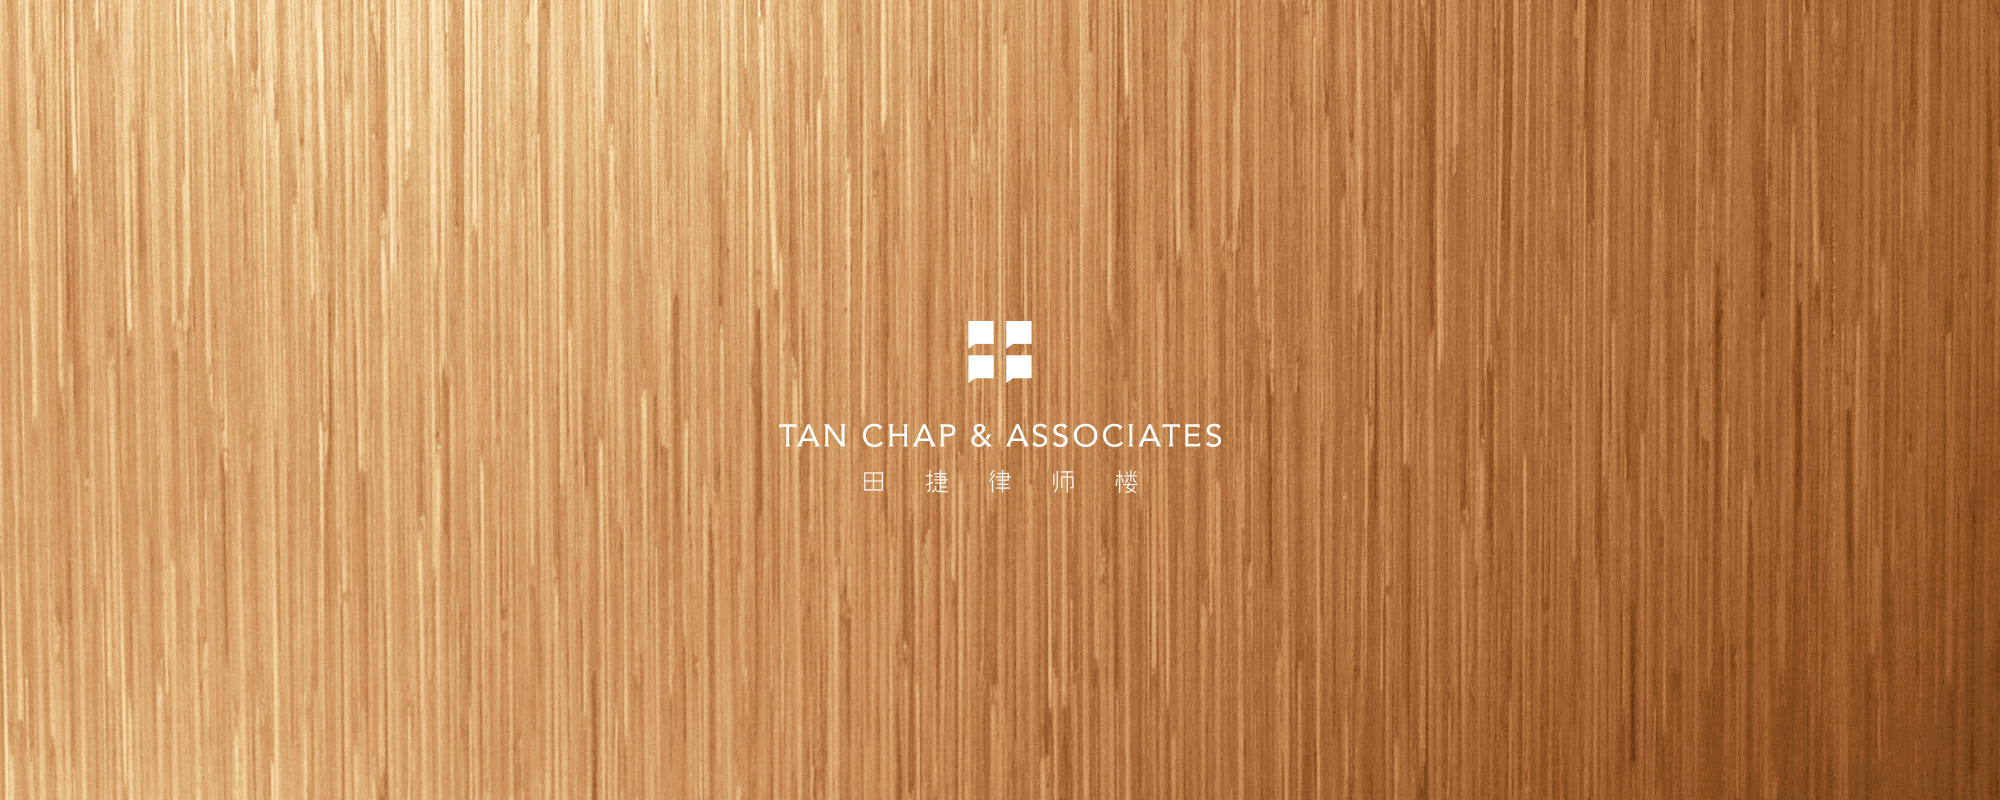 Tan Chap Associates Legal Law Firm Our Profile